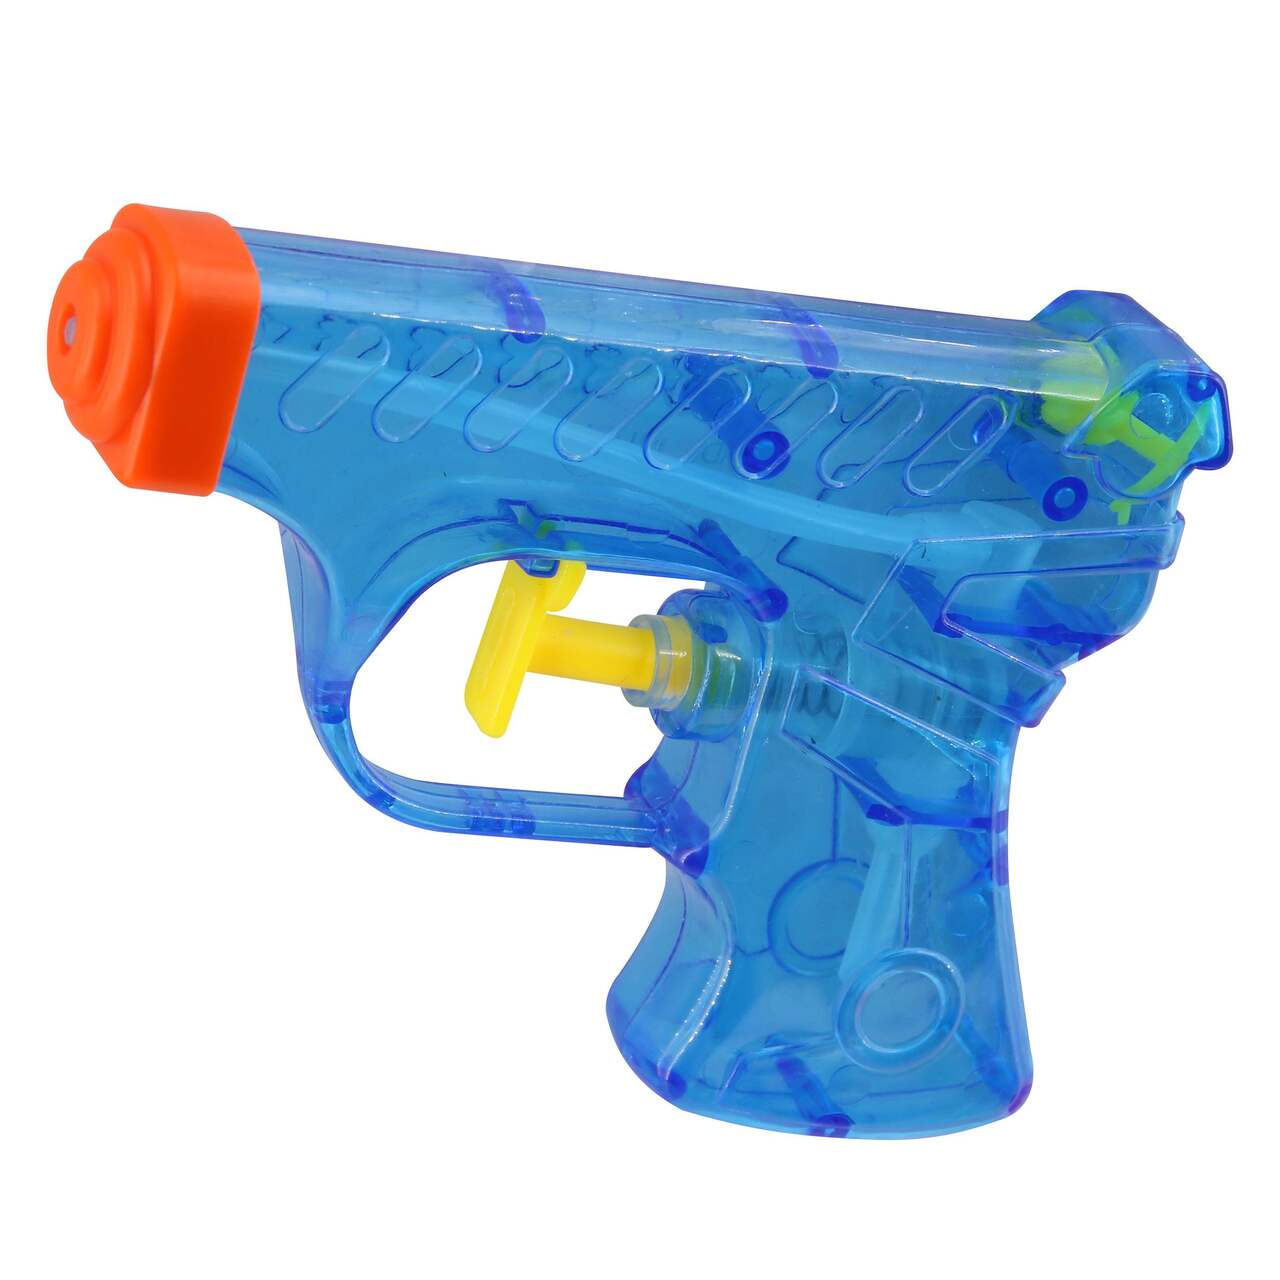 Idee jouet et cadeau anniversaire enfant : mini pistolet à eau